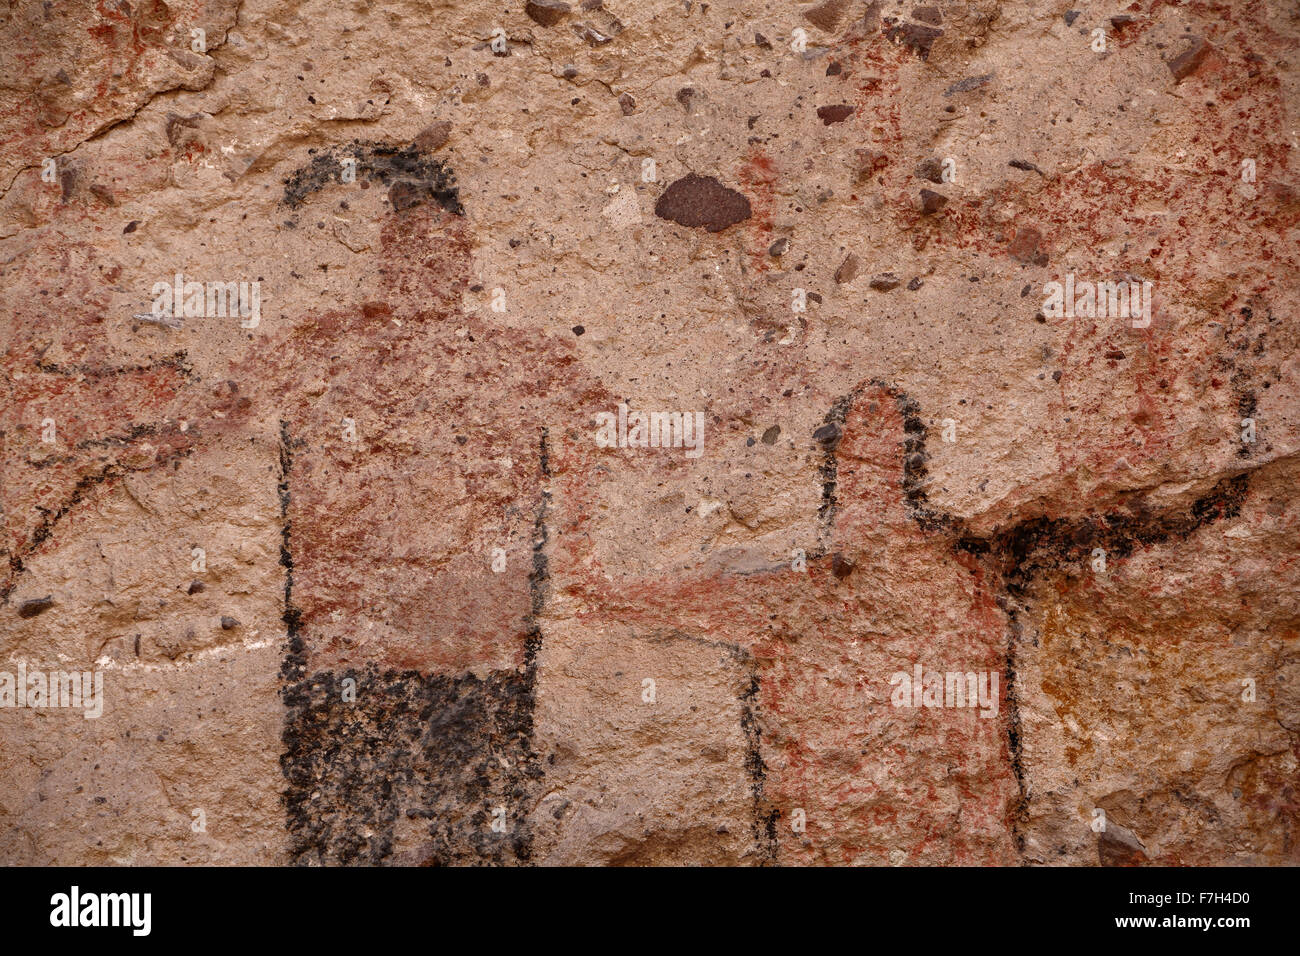 Pr5425-D. Pétroglyphes et peintures rupestres de Santa Marta, qui montrent des personnes, d'animaux (chevreuils, lapins, poissons, etc.). Baja, au Mexique. Banque D'Images